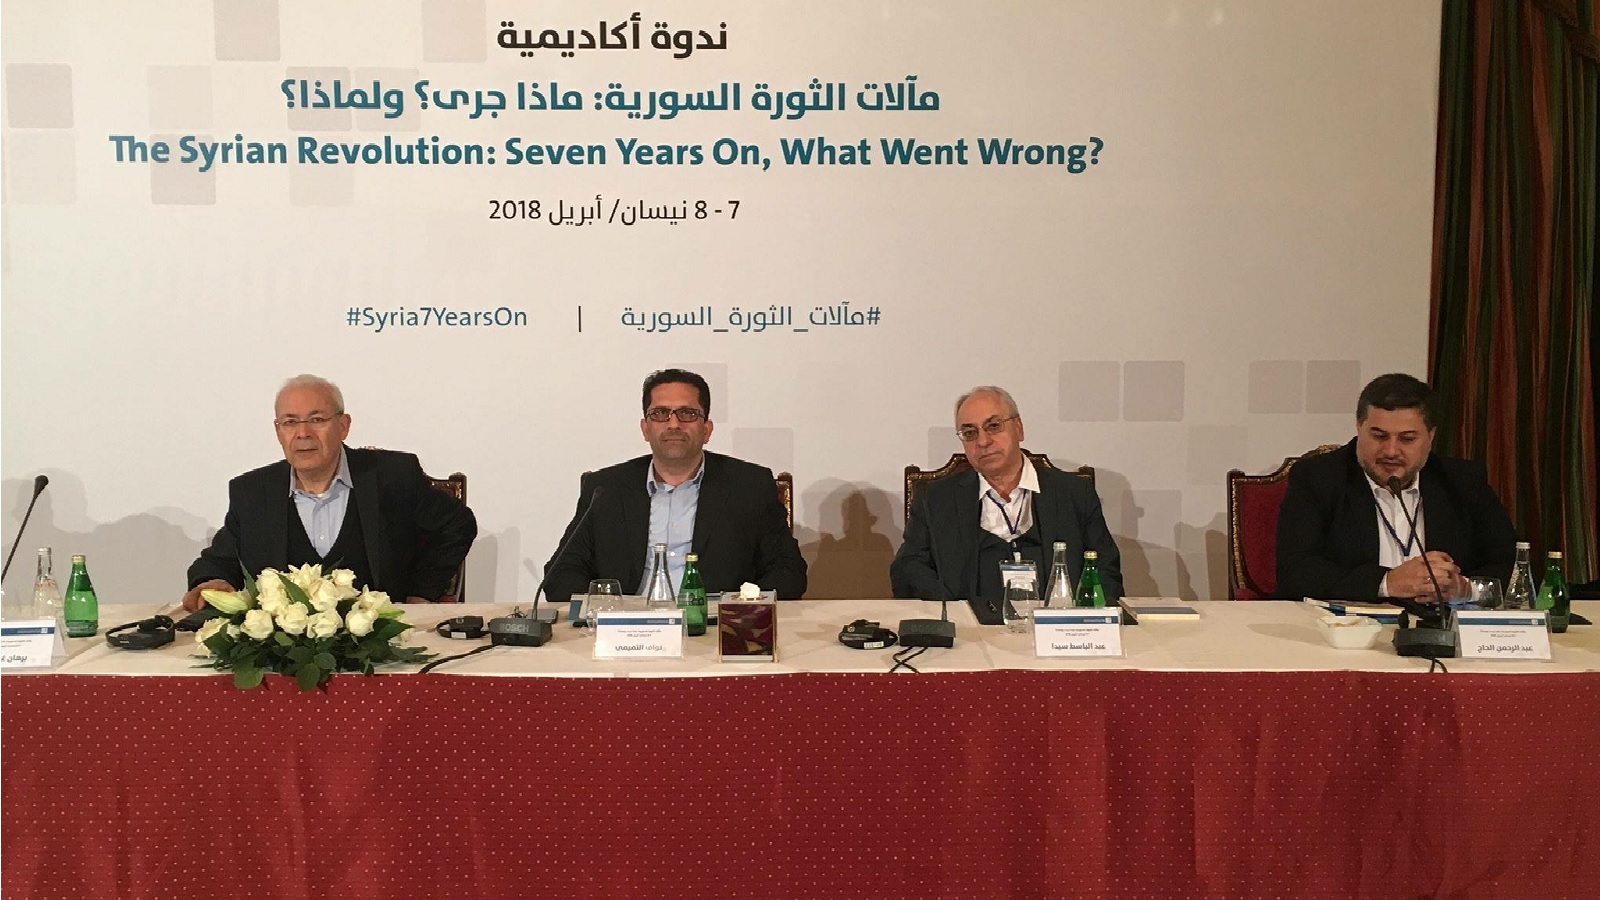 مؤتمر"مآلات الثورة السورية"يتعمق في أسباب أزمة المعارضة